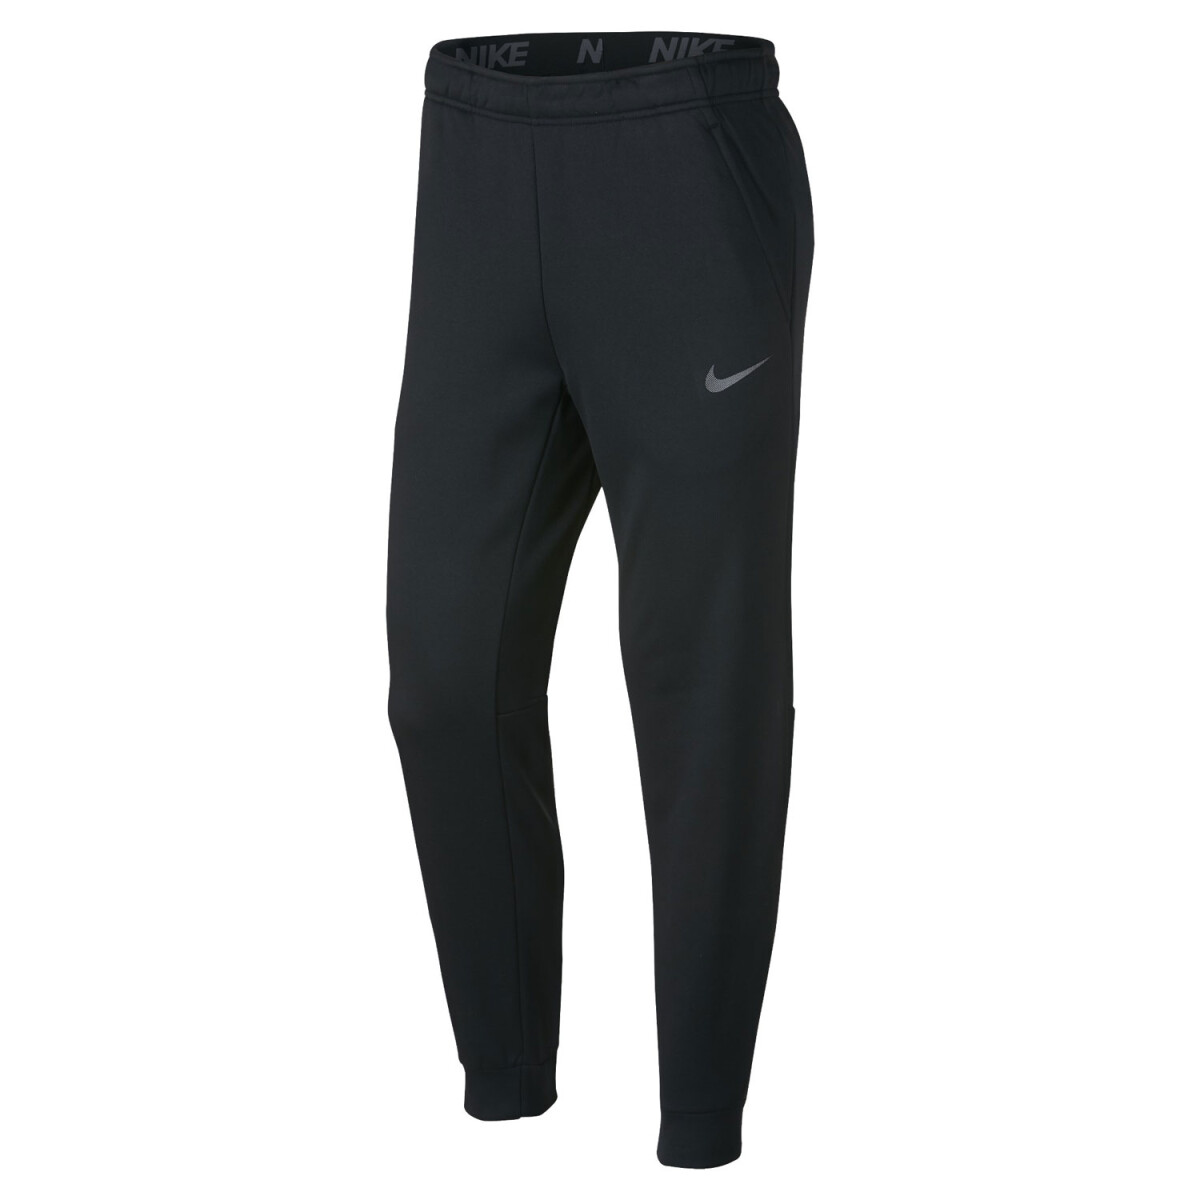 Pantalon Nike Training Hombre Thrma Taper - S/C 